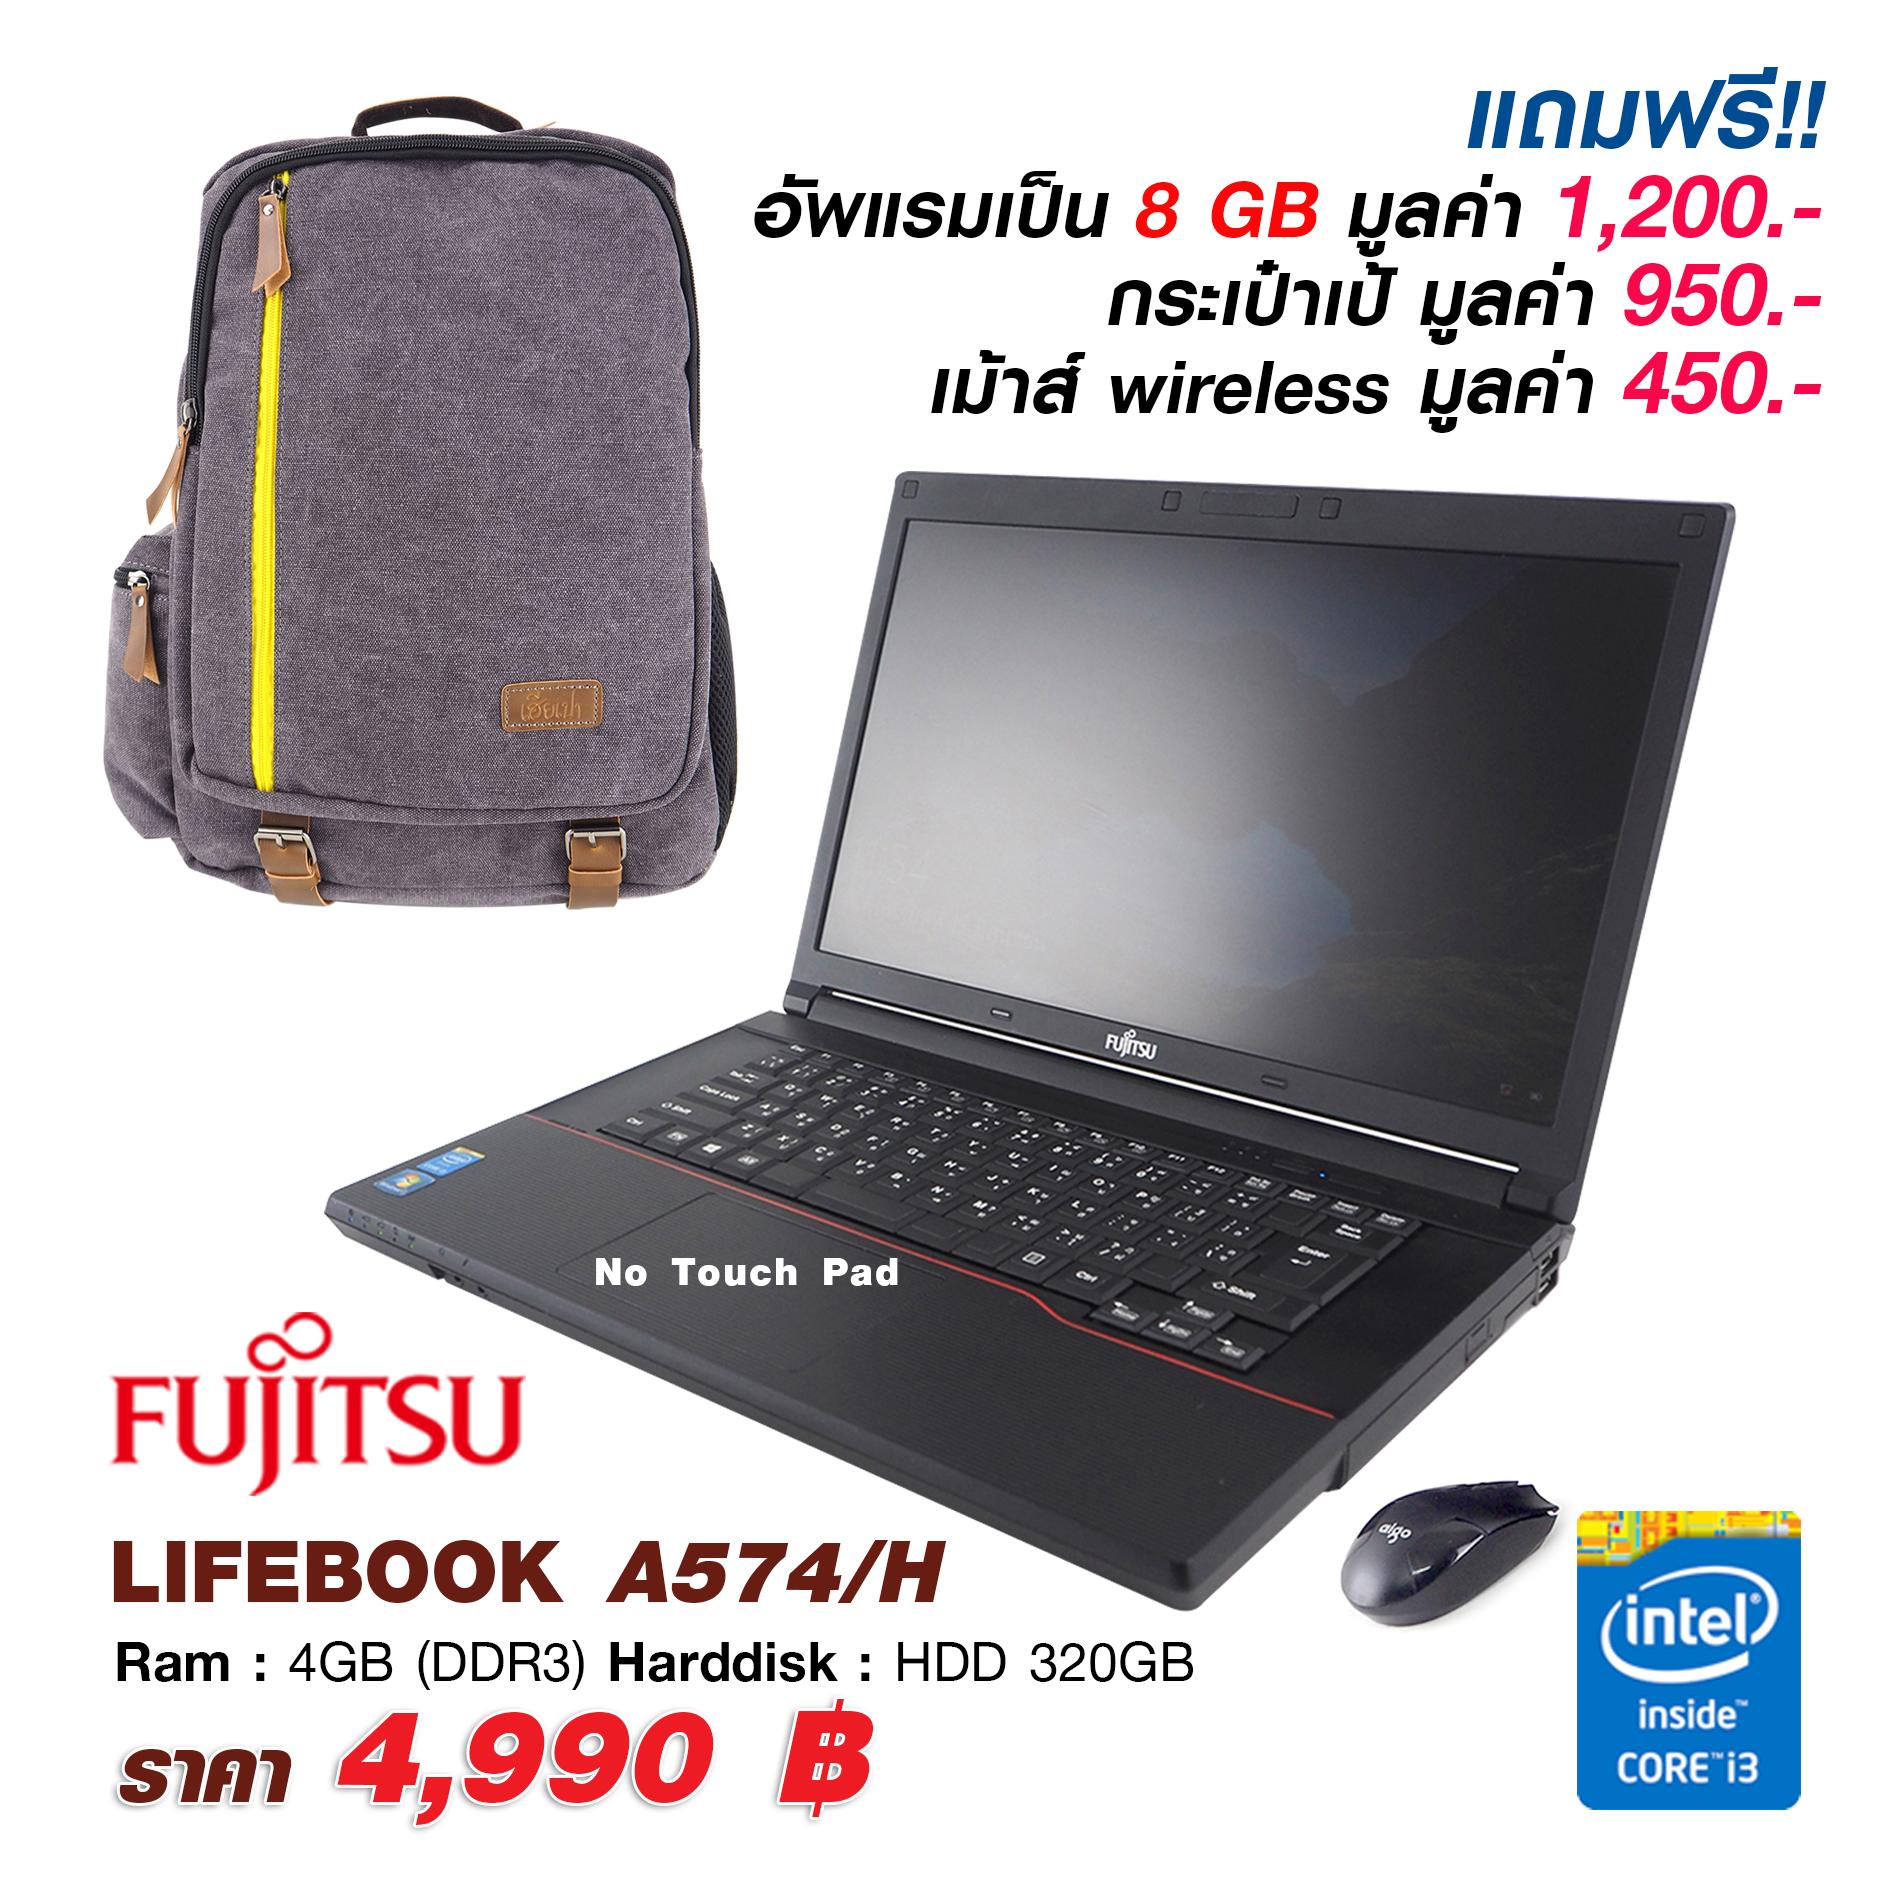 โน้ตบุ๊ก ​Fujitsu LifeBook A574/H แถม!! กระเป๋า และ เม้าส์ไร้สาย + แรม 4 GB